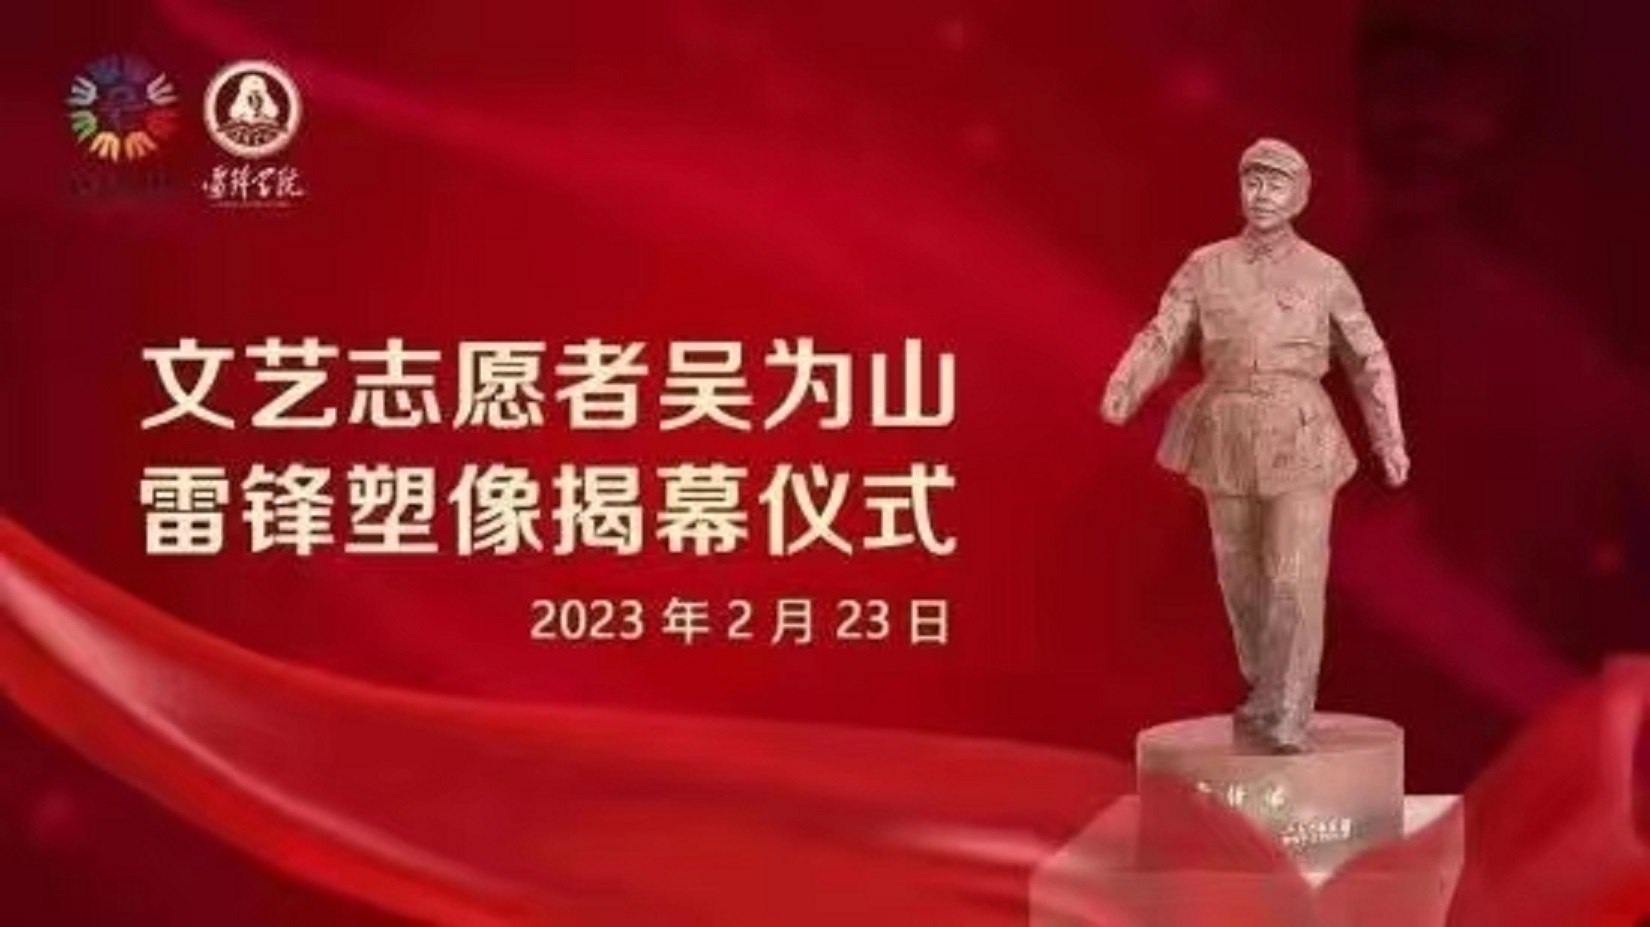 《雷鋒》塑像落戶雷鋒學院揭幕儀式在遼寧撫順舉行